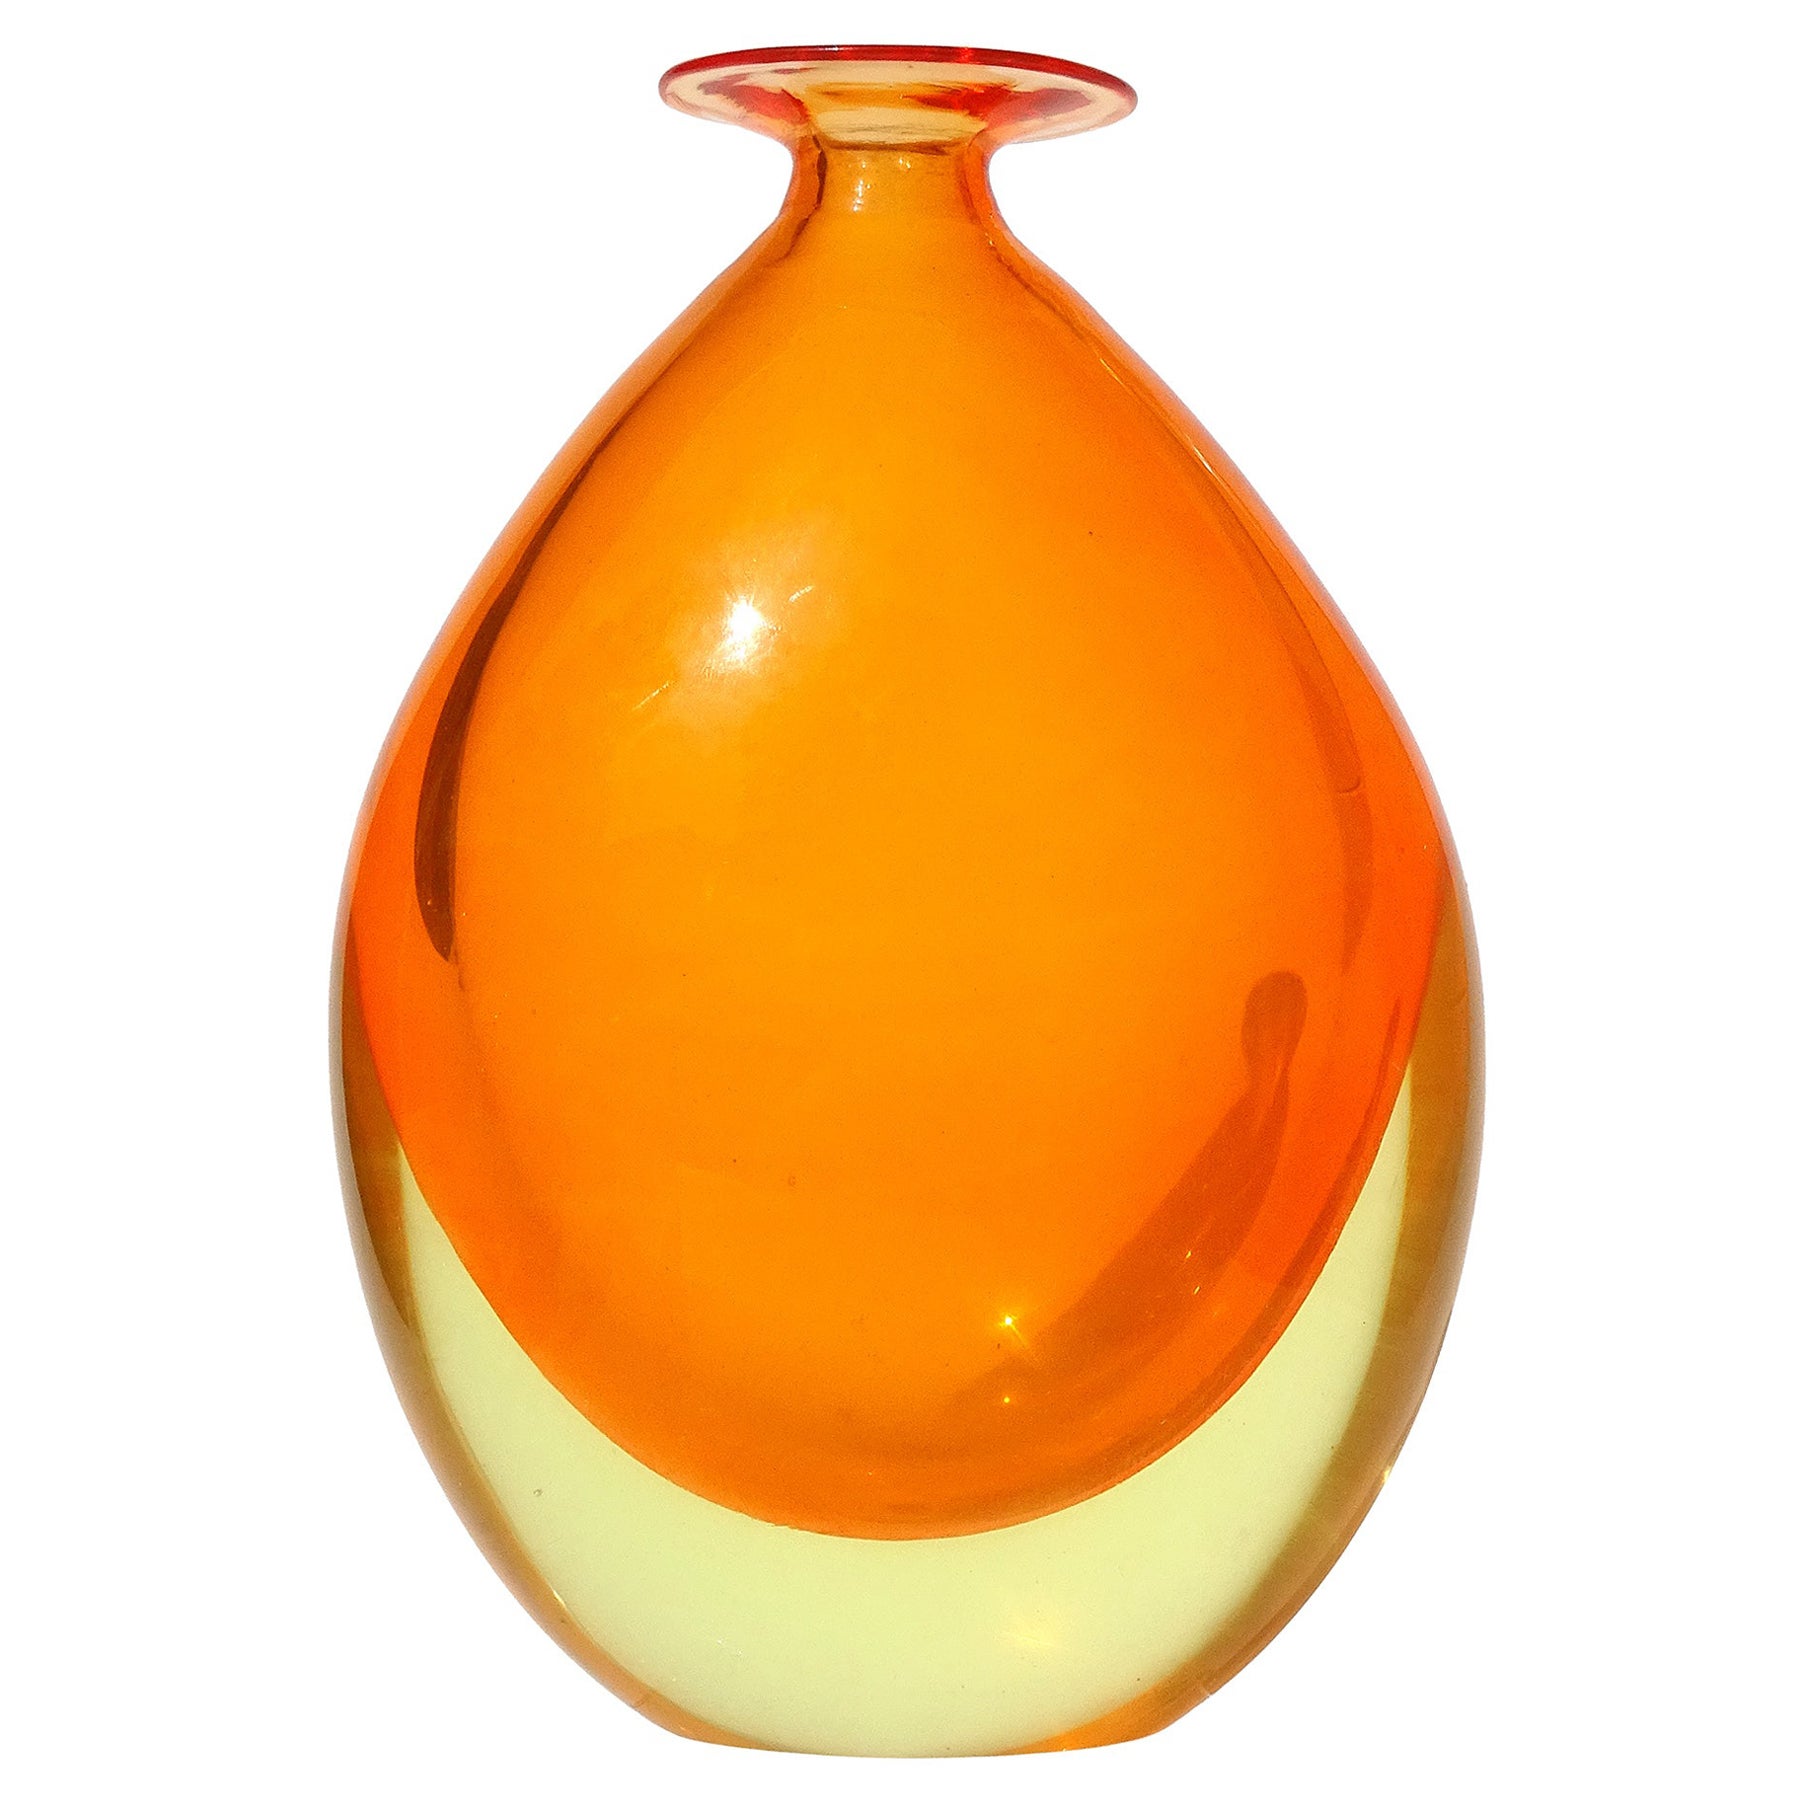 Murano Sommerso Orange Yellow Glowing Uranium Italian Art Glass Flower Vase